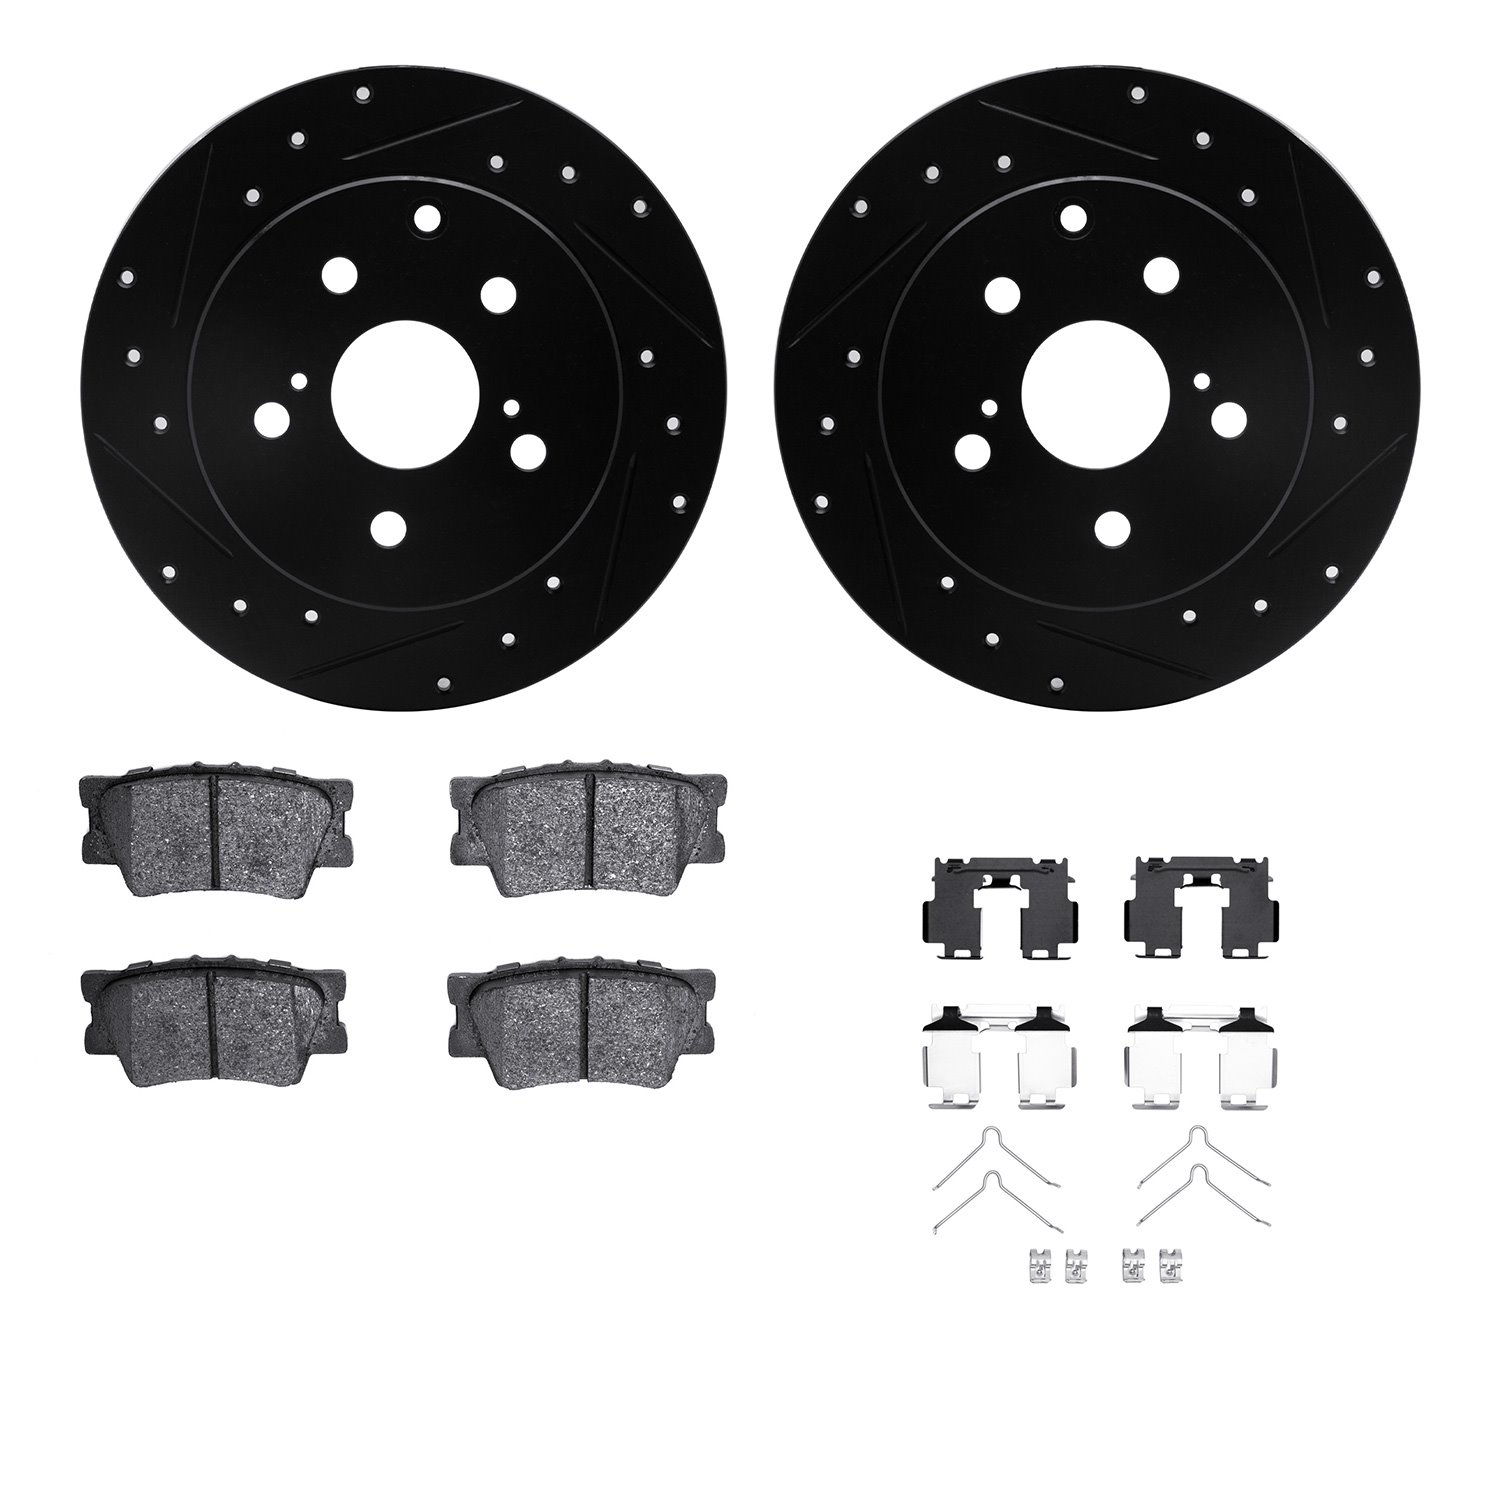 8312-76177 Drilled/Slotted Brake Rotors with 3000-Series Ceramic Brake Pads Kit & Hardware [Black], 2006-2018 Lexus/Toyota/Scion